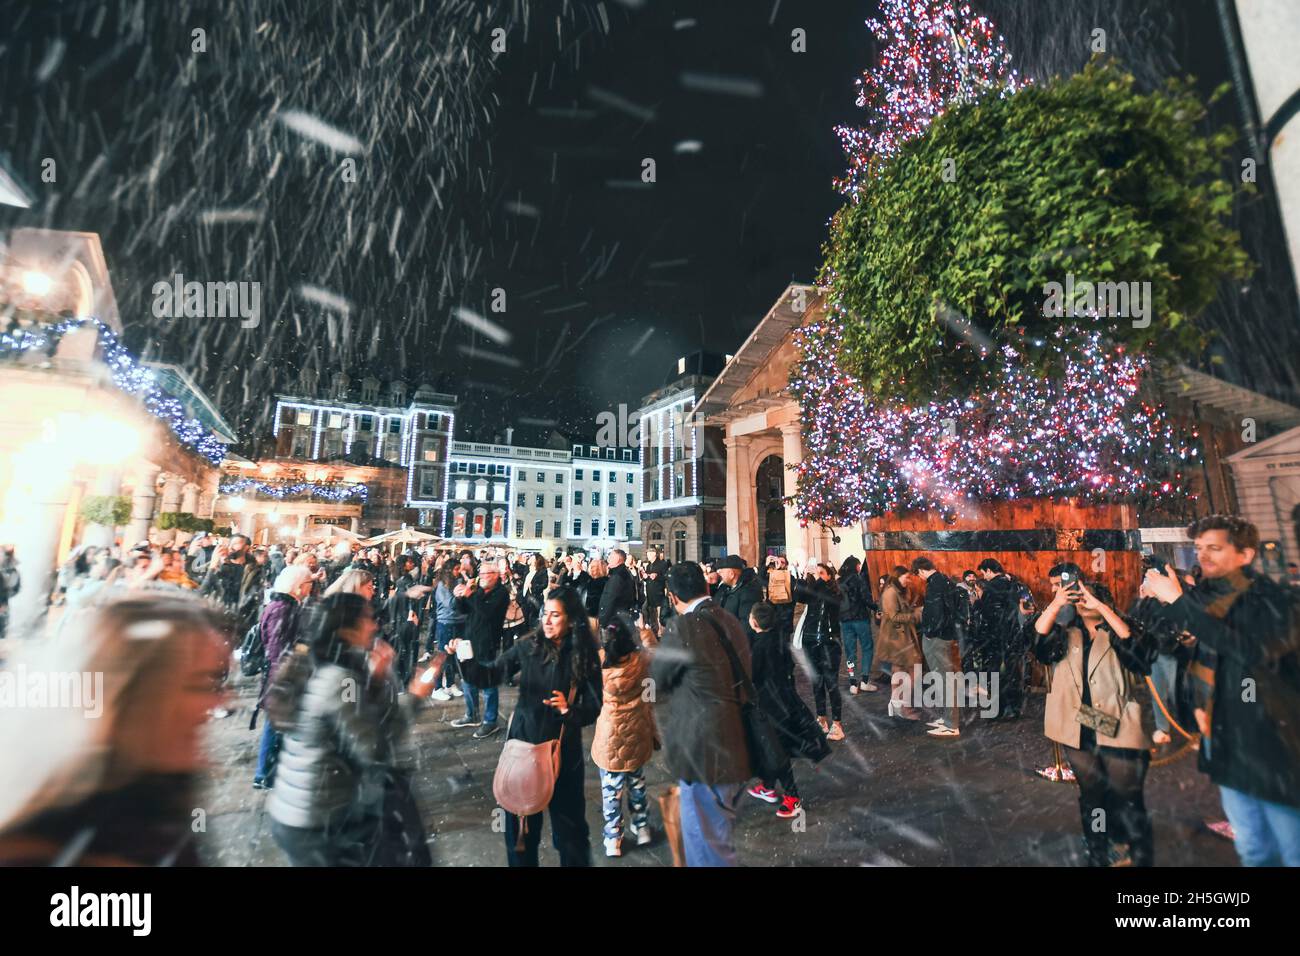 Am 9. November 2021 wurden die Weihnachtslichter von Covent Garden eingeschaltet. Schnee fiel über die Käufer, als sie Fotos vom Baum machten. Der Baum hat 50,000 LED-Leuchten. Stockfoto